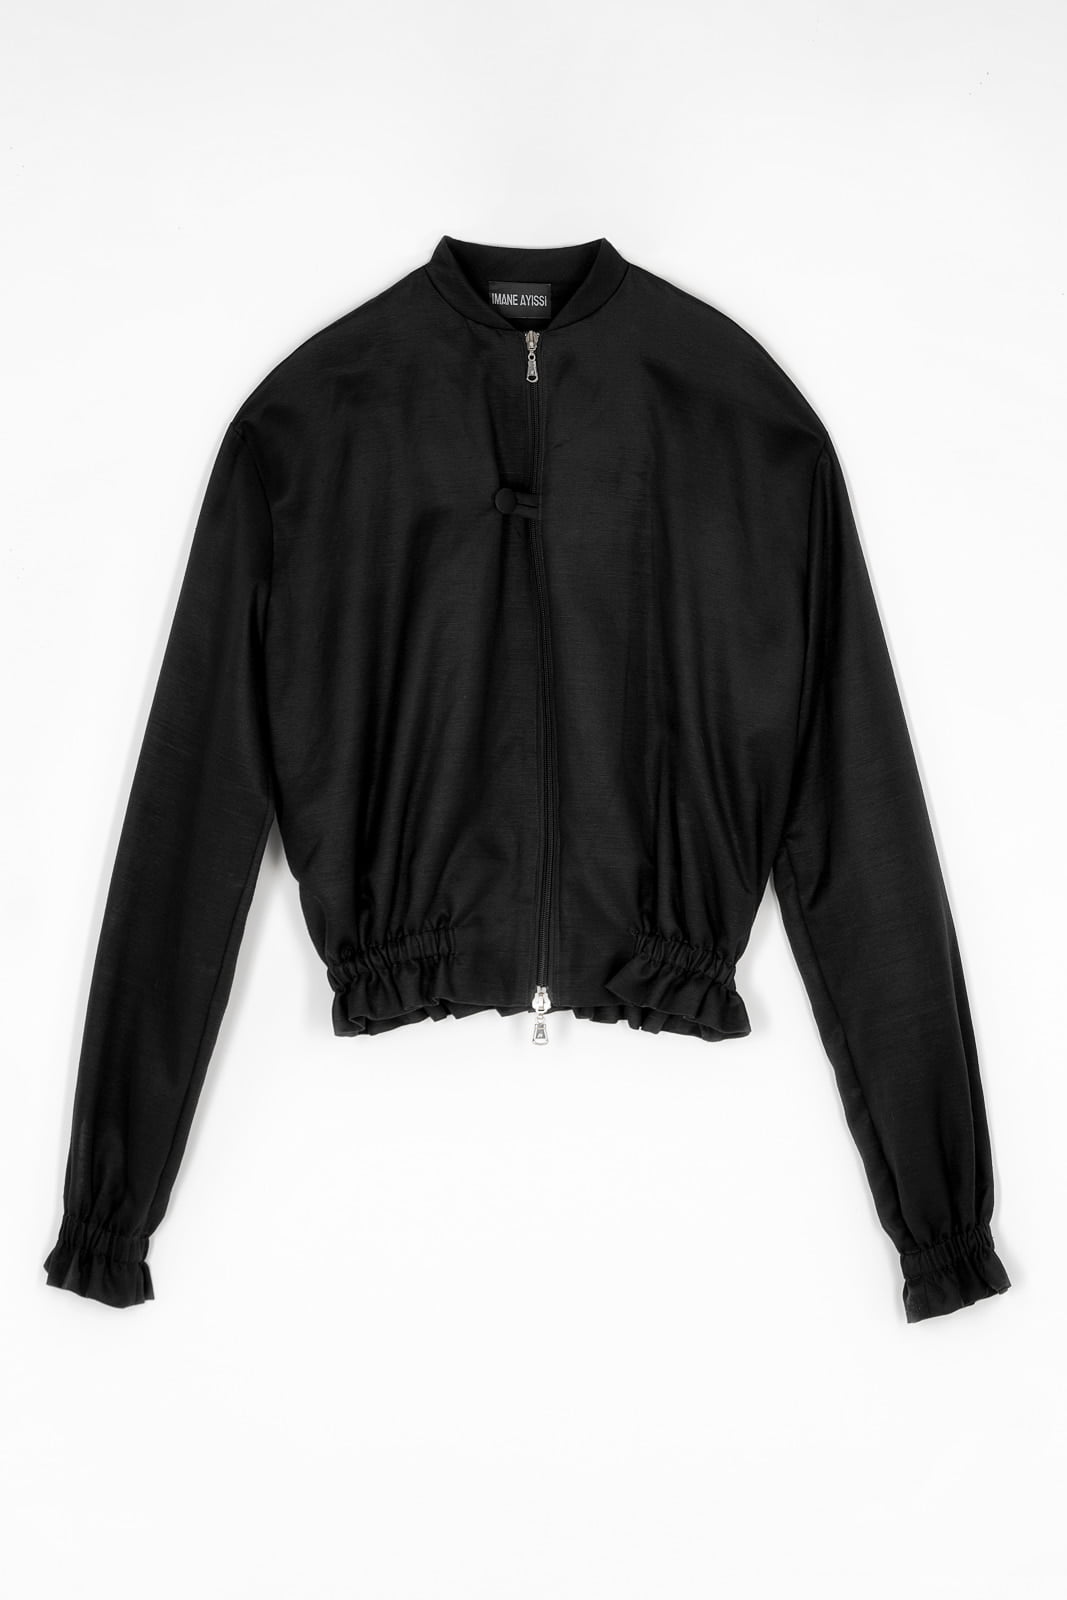 Imane Ayissi high fashion black jacket